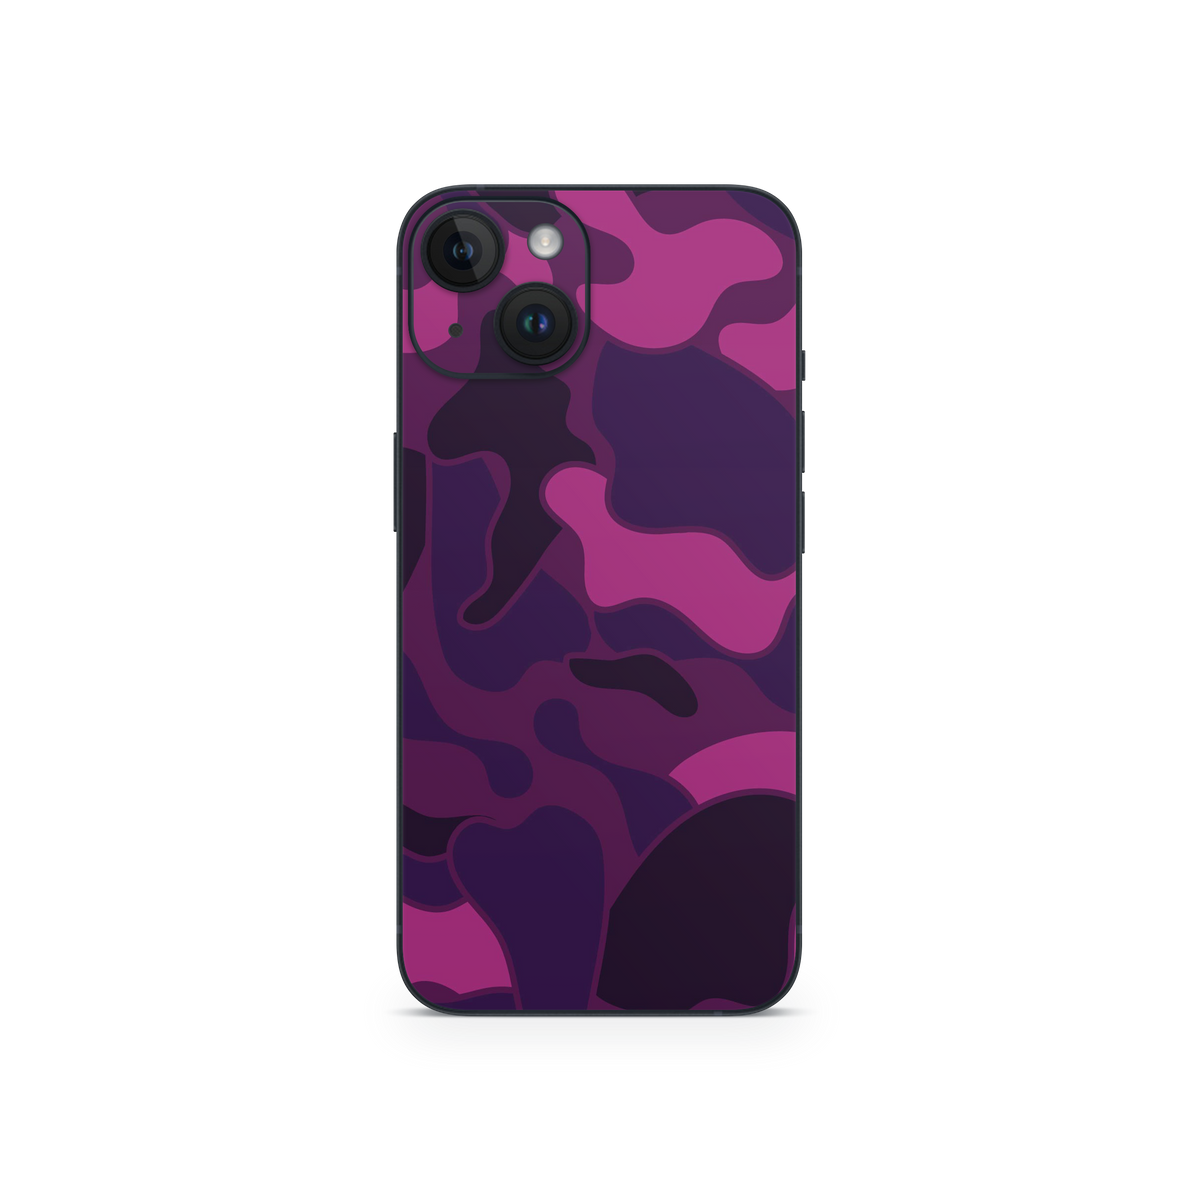 Apple iPhone Ape Camo Purple Skin